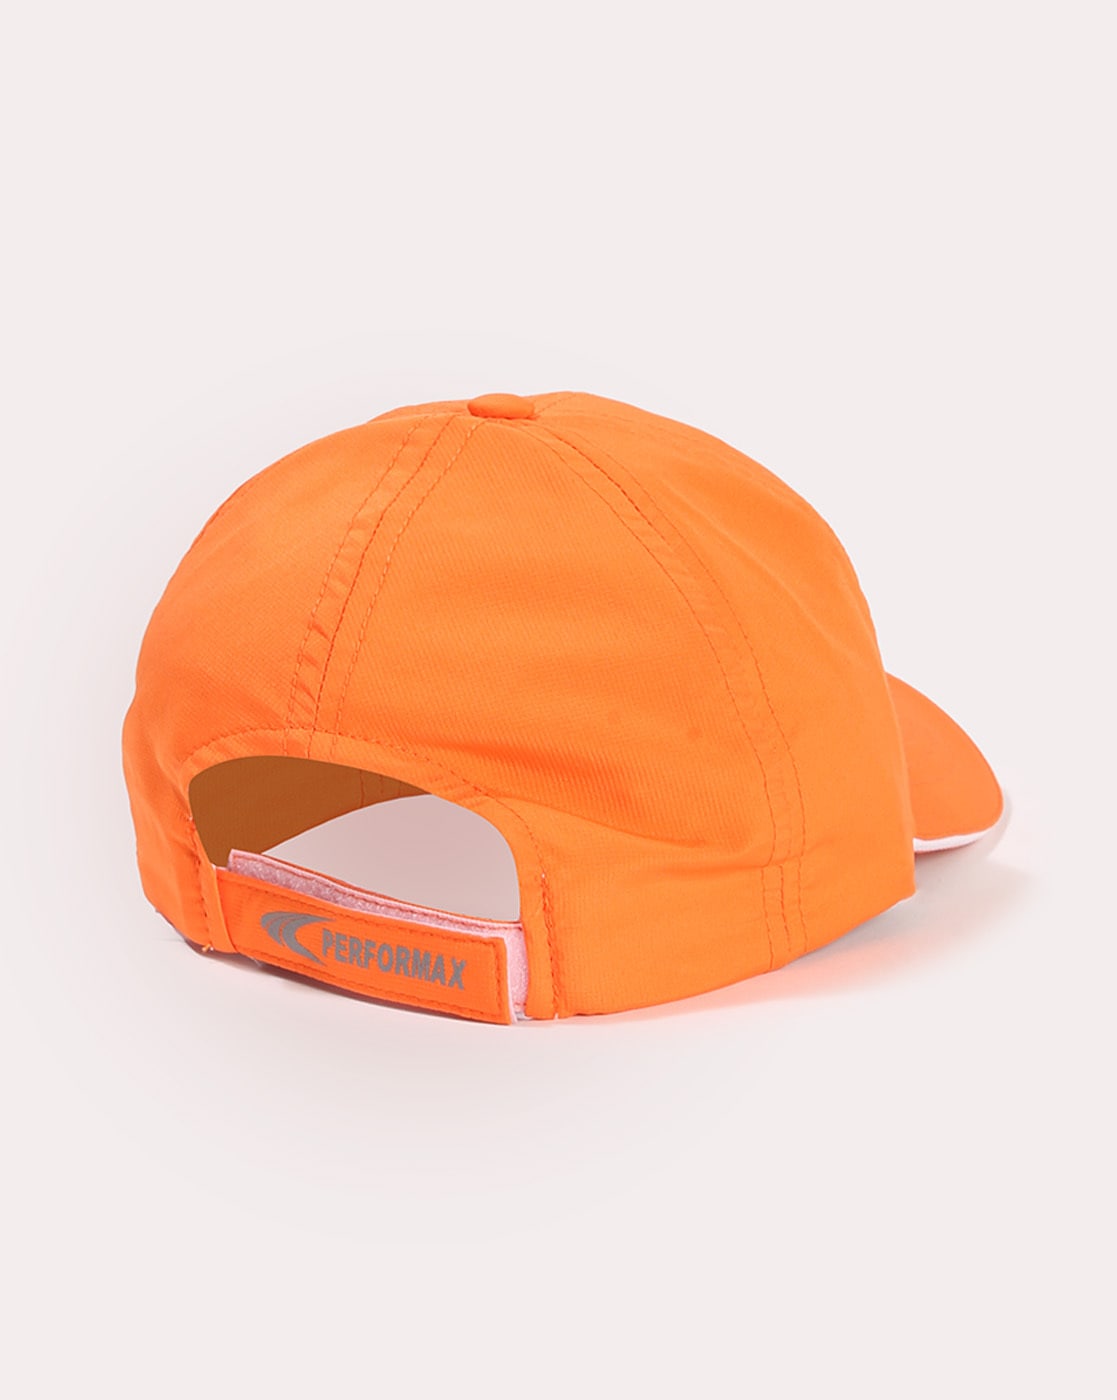 Buy Orange Caps & Hats for Men by PERFORMAX Online